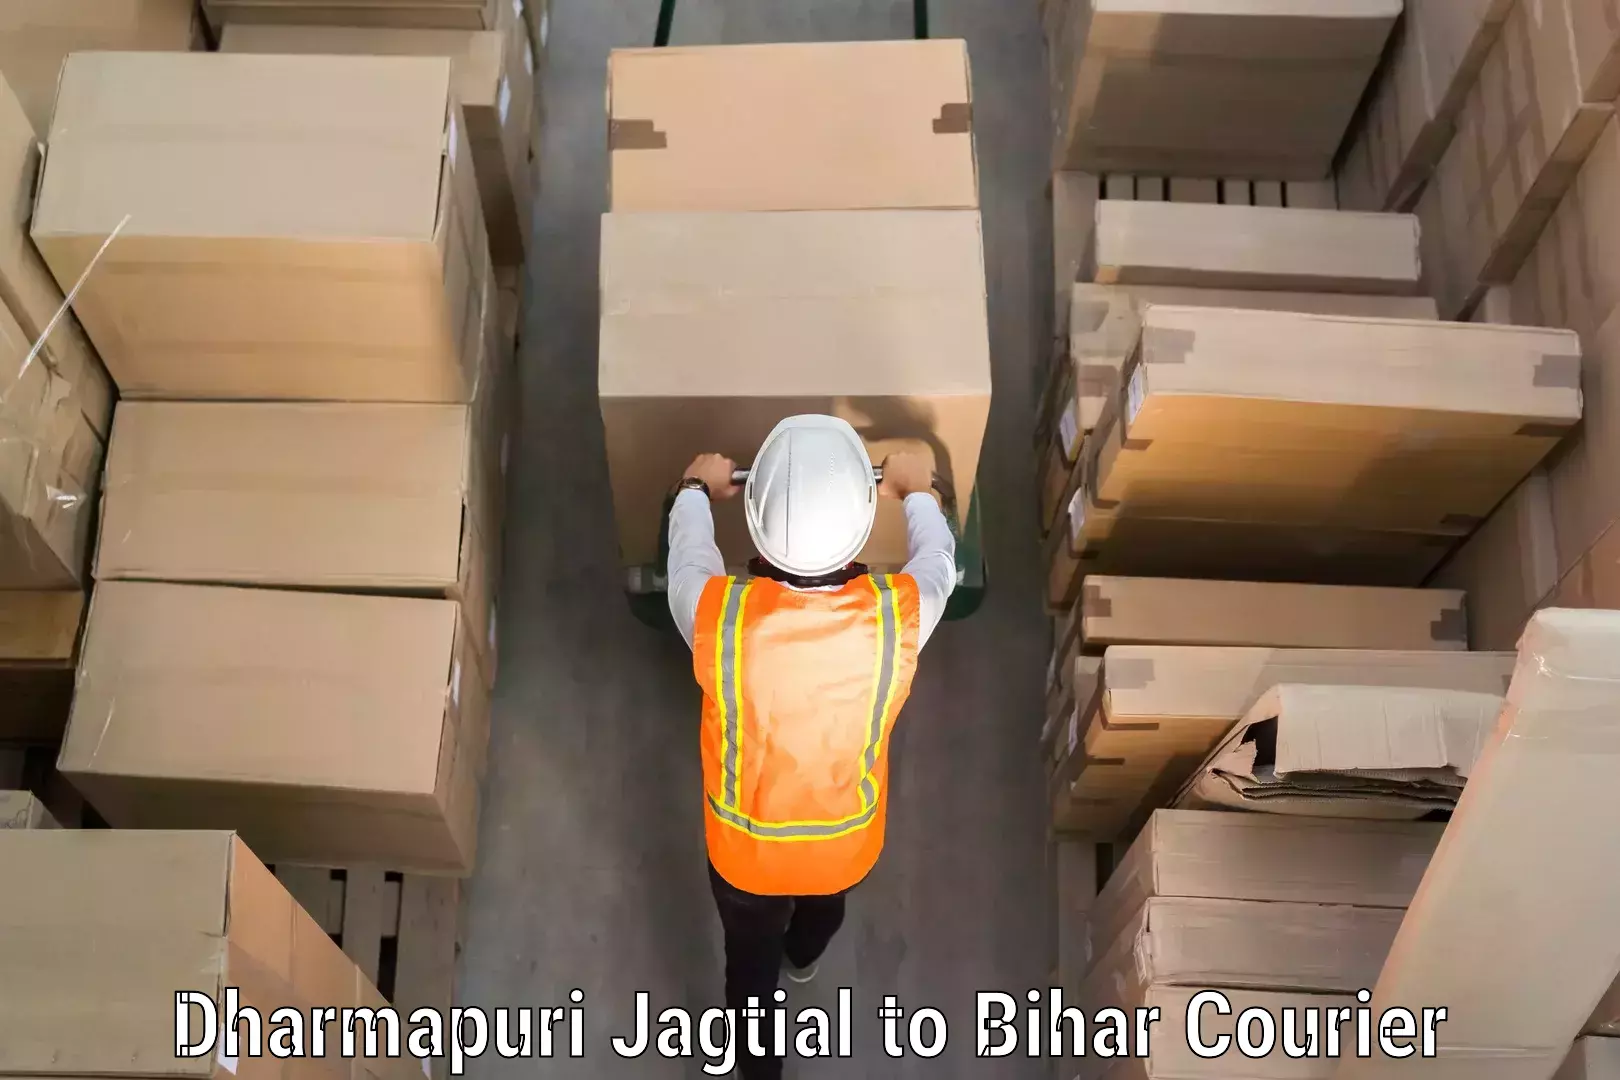 Efficient luggage delivery Dharmapuri Jagtial to Danapur